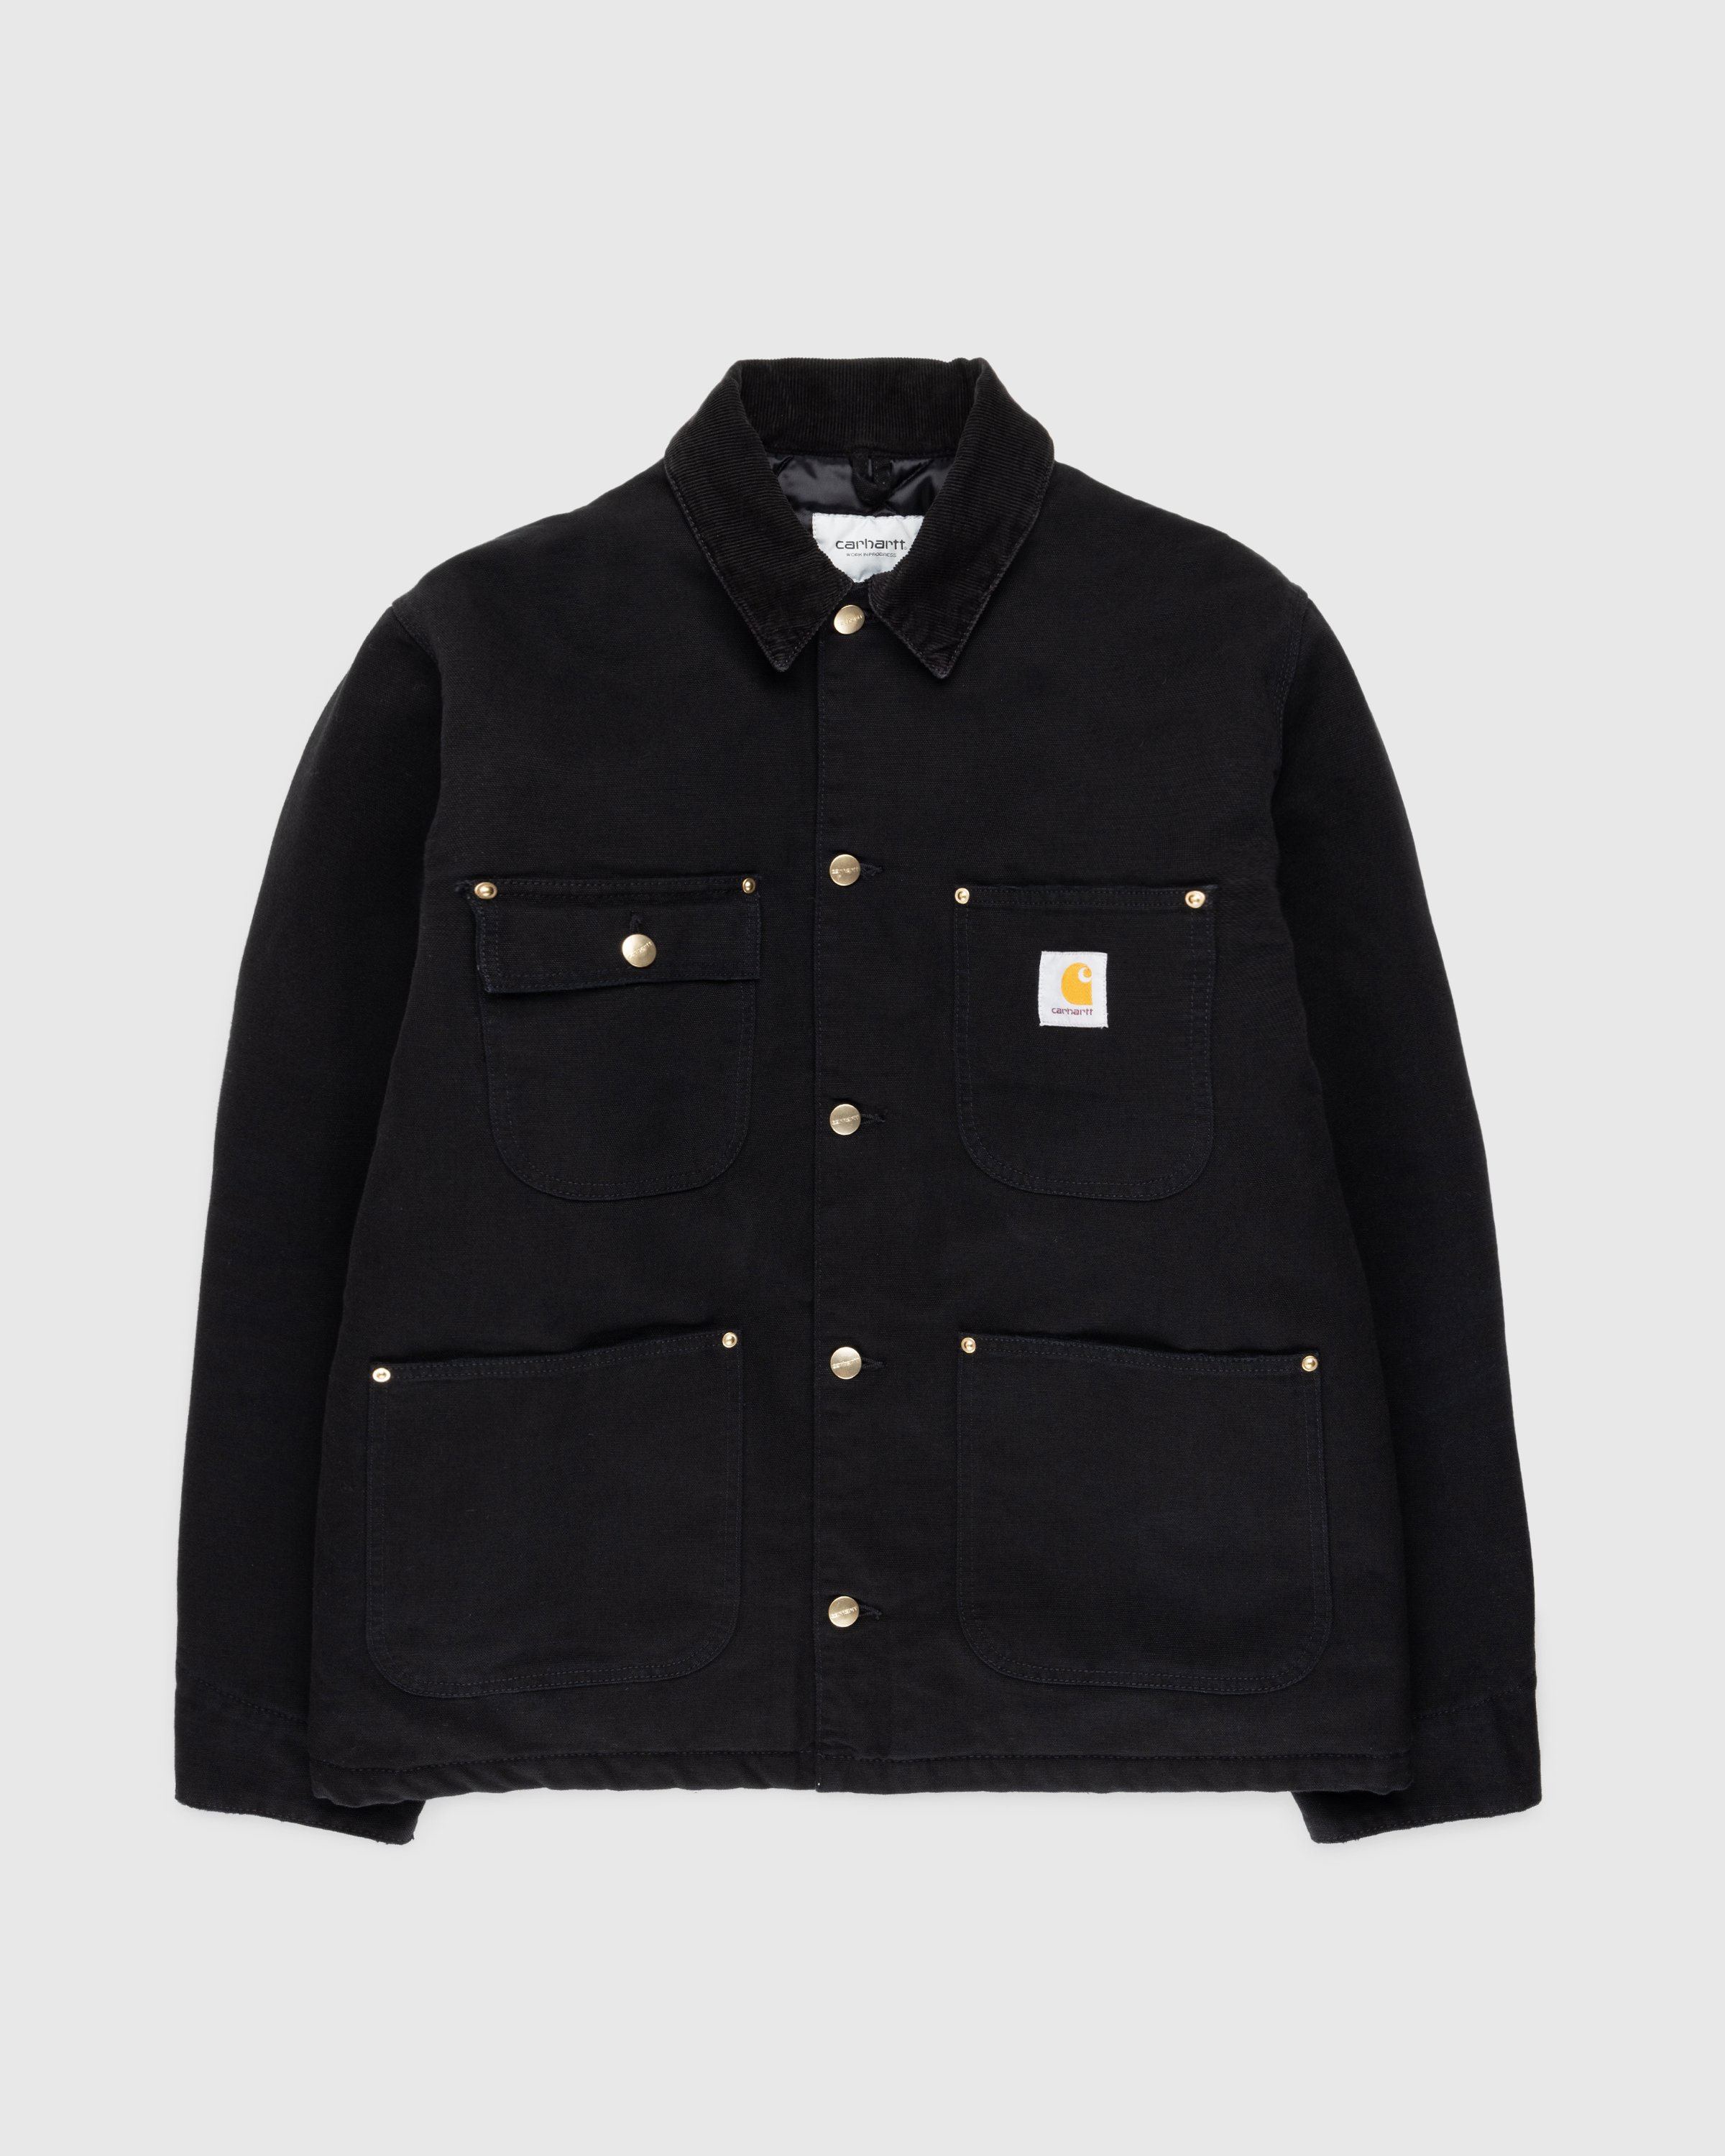 Carhartt WIP - OG Chore Coat Black/Aged Canvas - Clothing - Black - Image 1